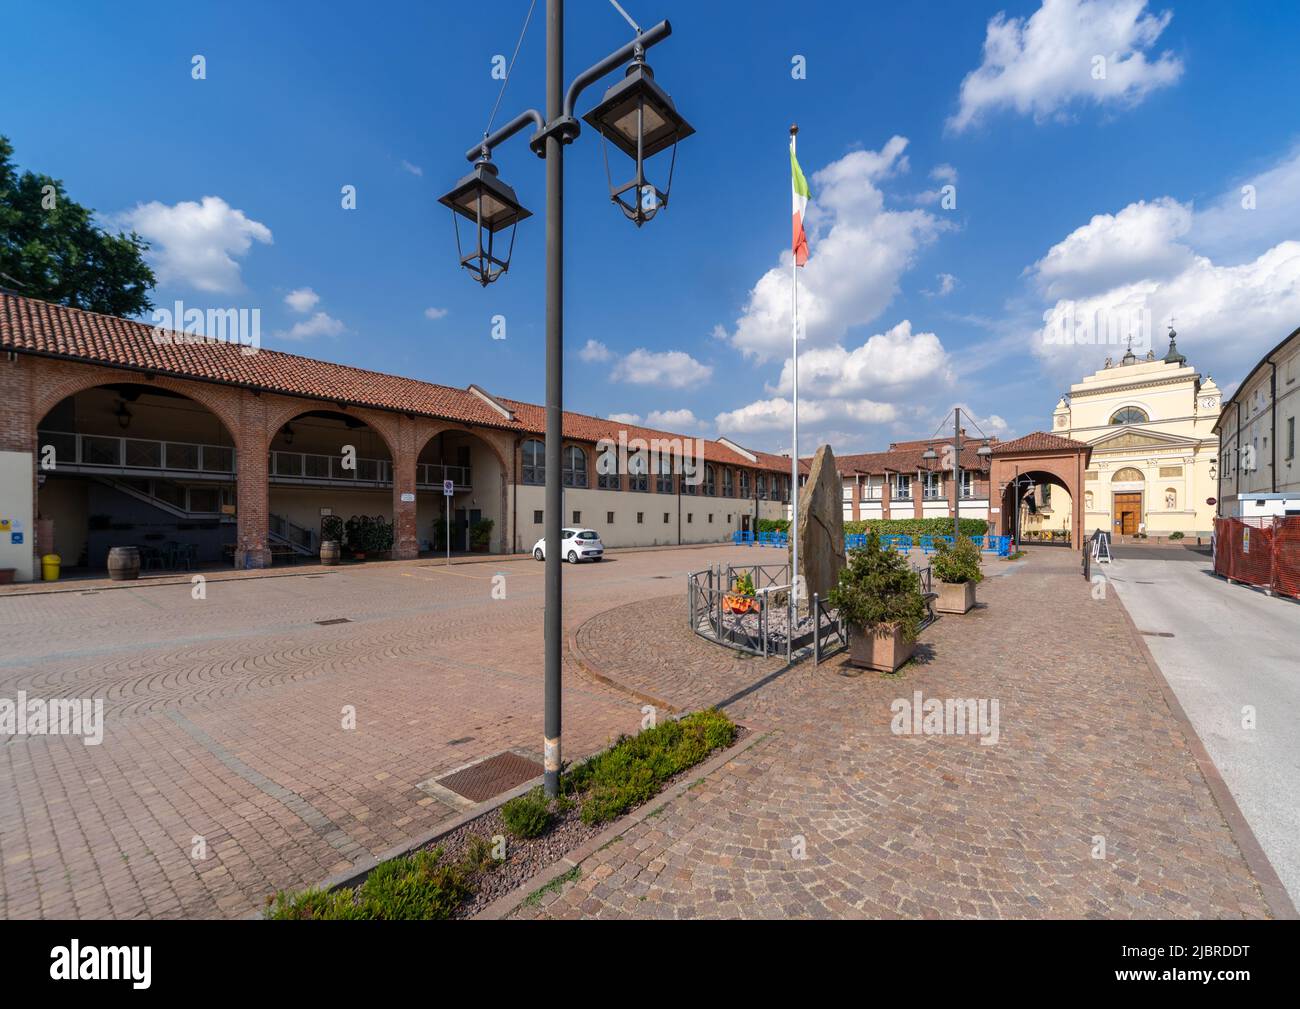 Casalgrasso, Cuneo, Italy - June 06, 2022: Piazzale Cavalieri di Vittorio Veneto with the parish church of San Giovanni in the background Stock Photo